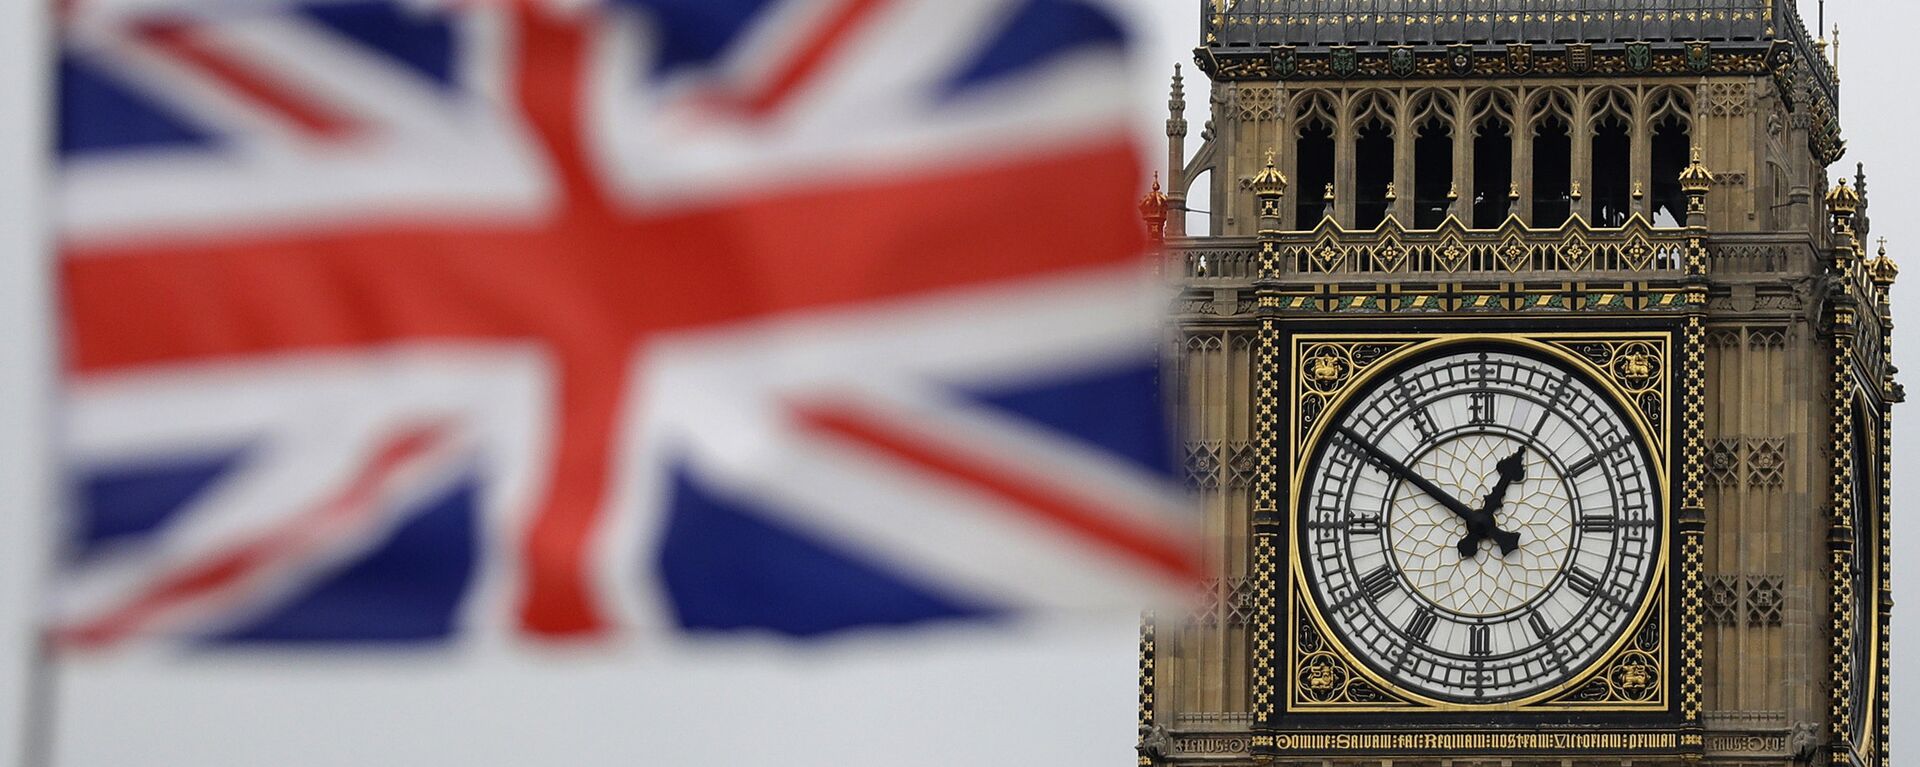 Застава Велике Британије испред Биг Бена у Лондону. - Sputnik Србија, 1920, 11.11.2021